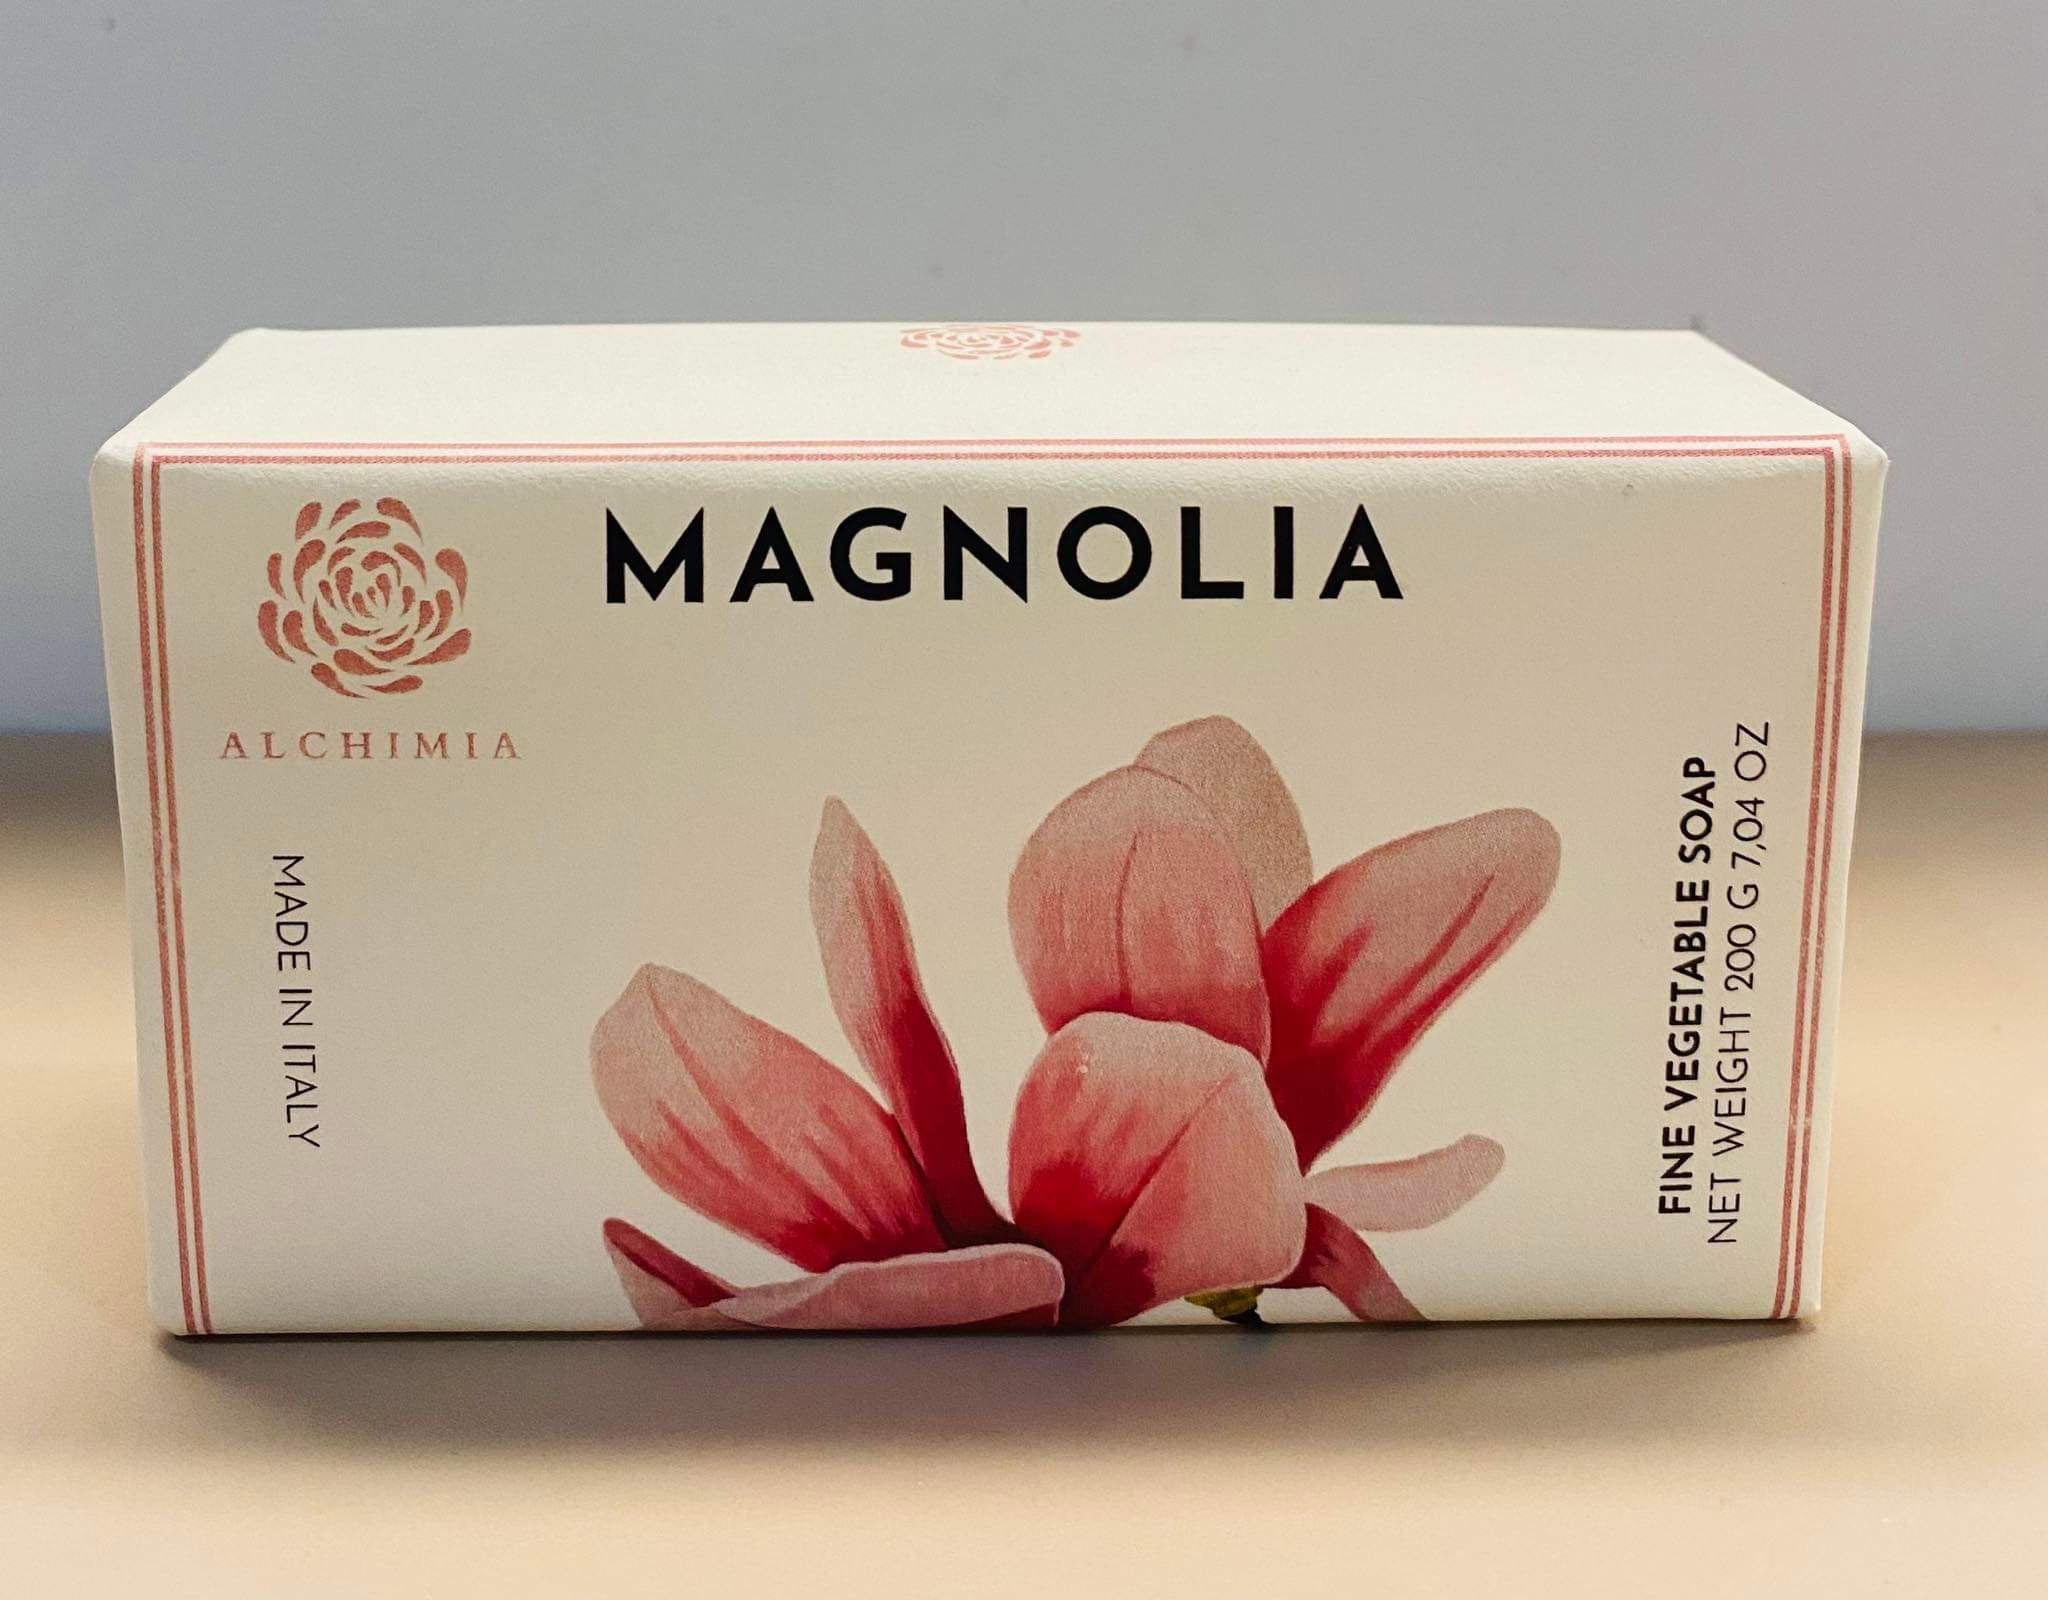 Alchimia Magnolia